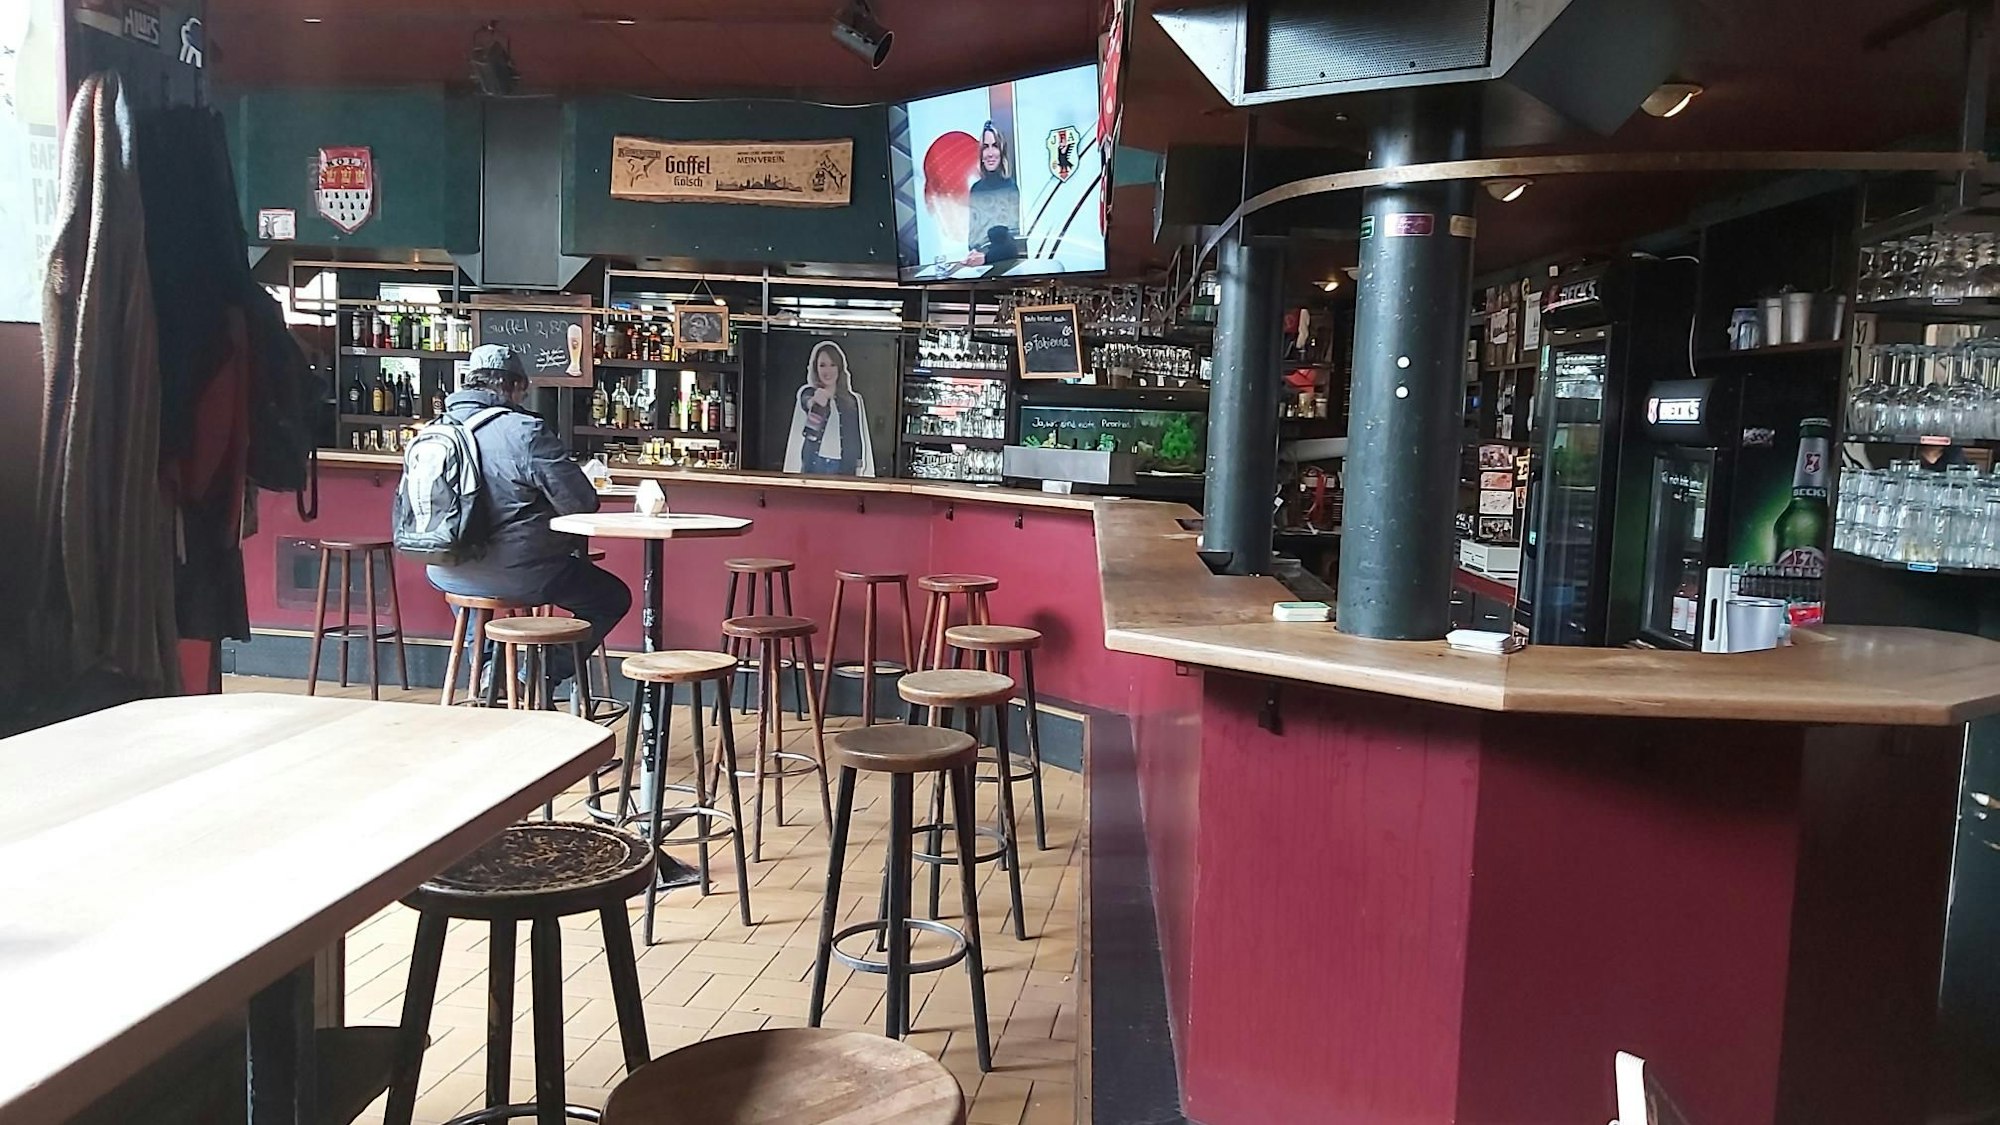 Piranha-Bar in Köln kurz vor dem ersten deutschen WM-Spiel